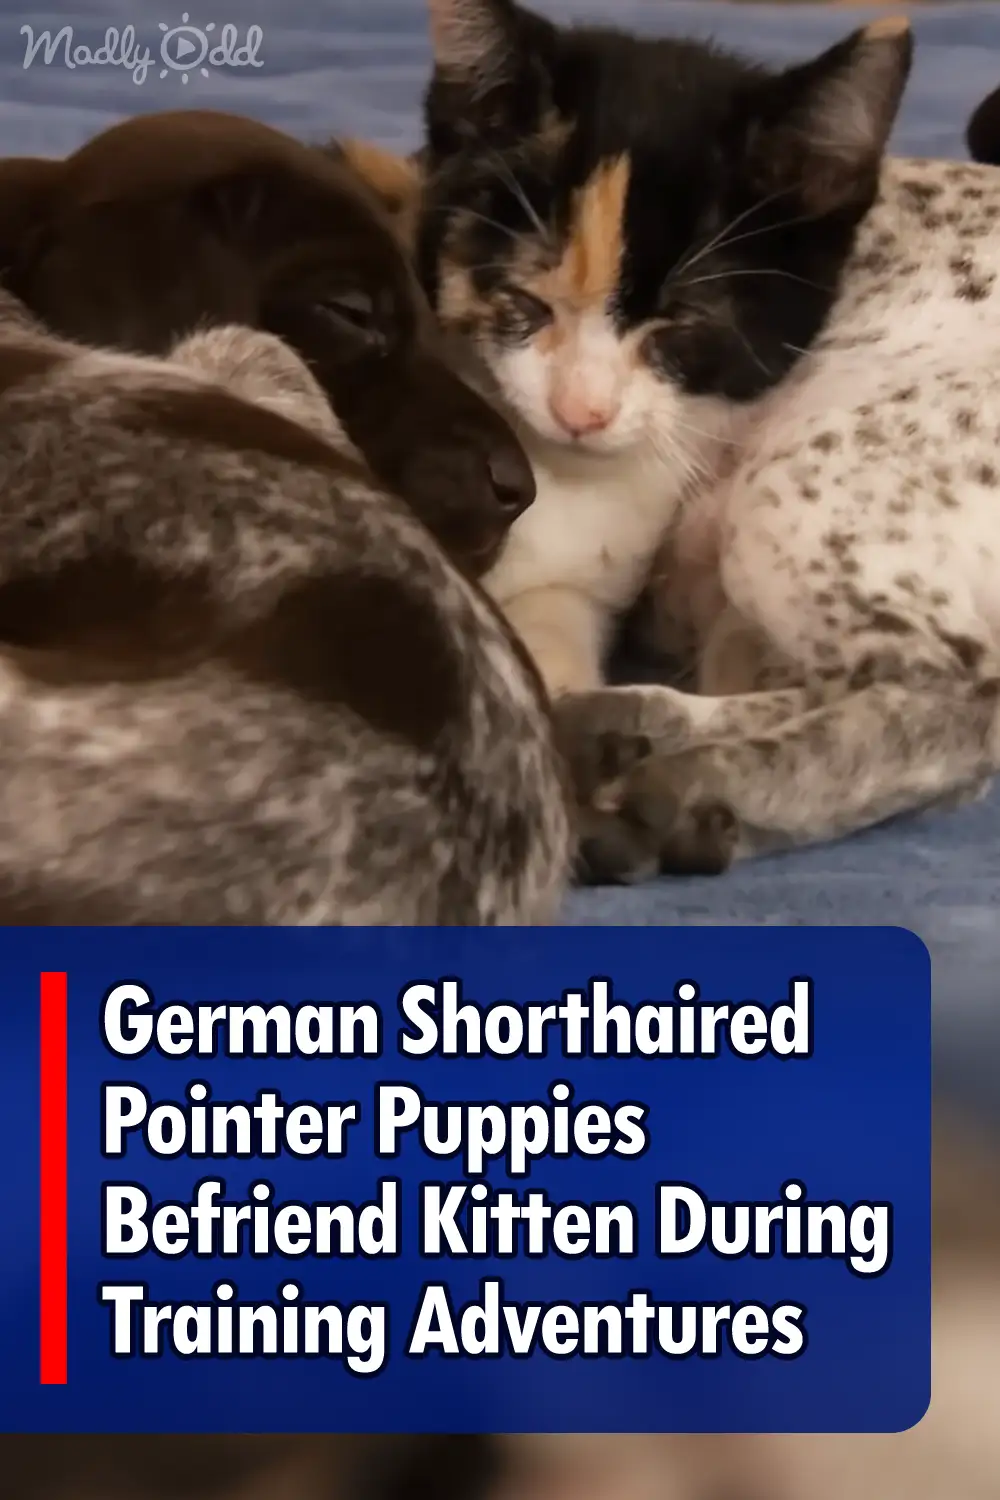 German Shorthaired Pointer Puppies Befriend Kitten During Training Adventures